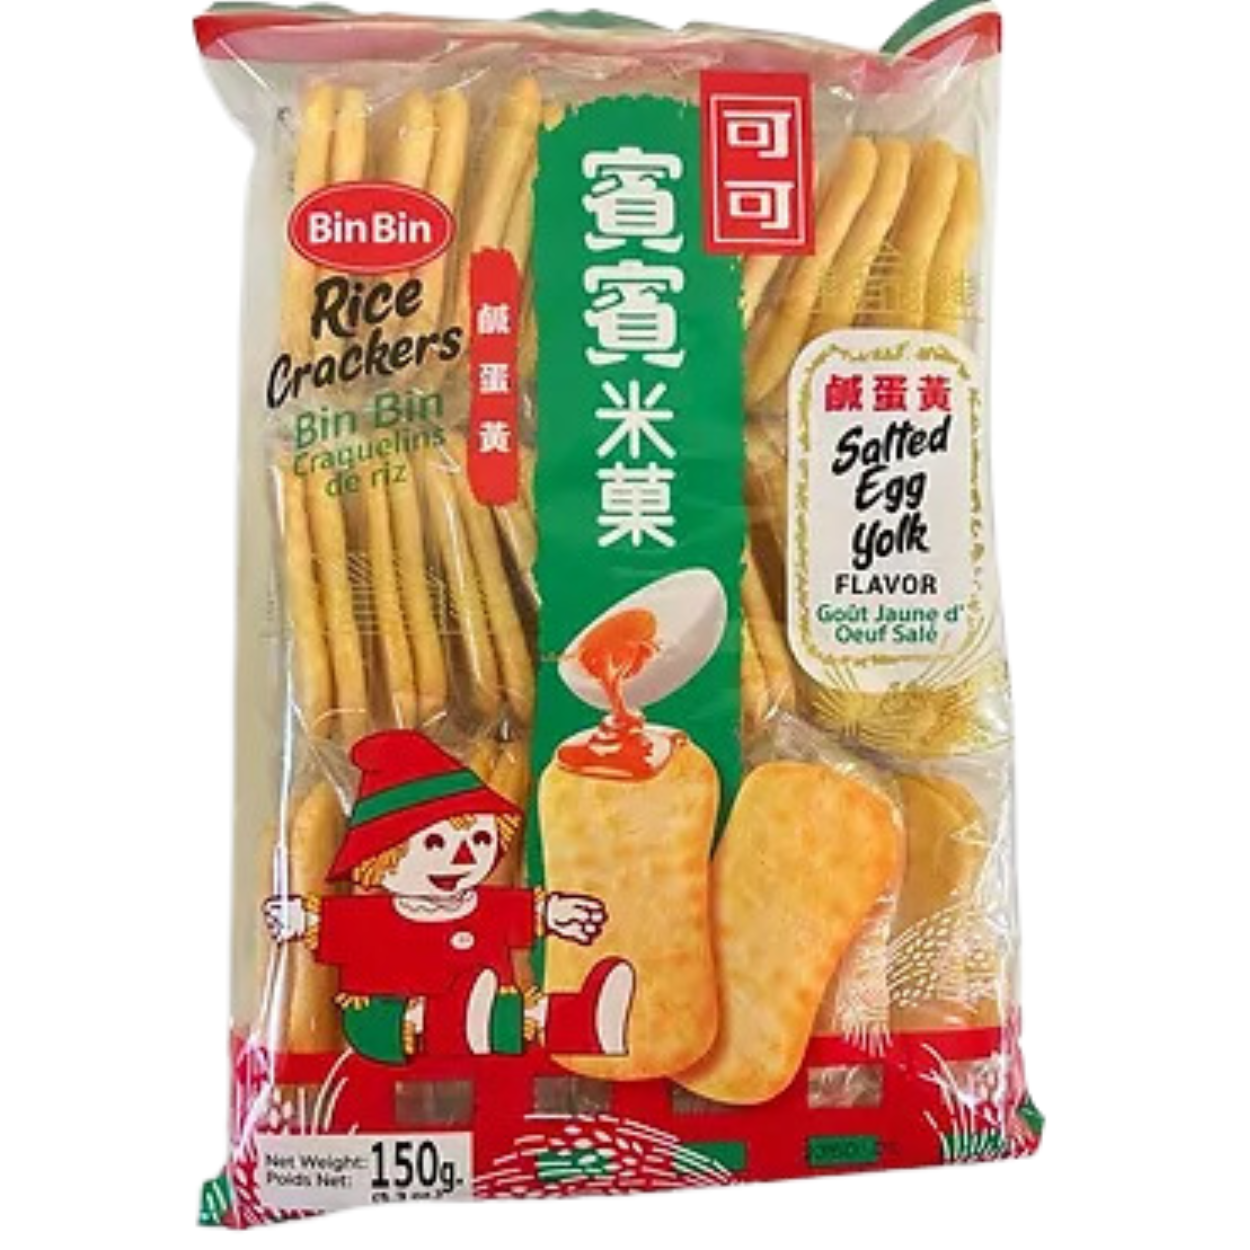 BinBin Rice Crackers